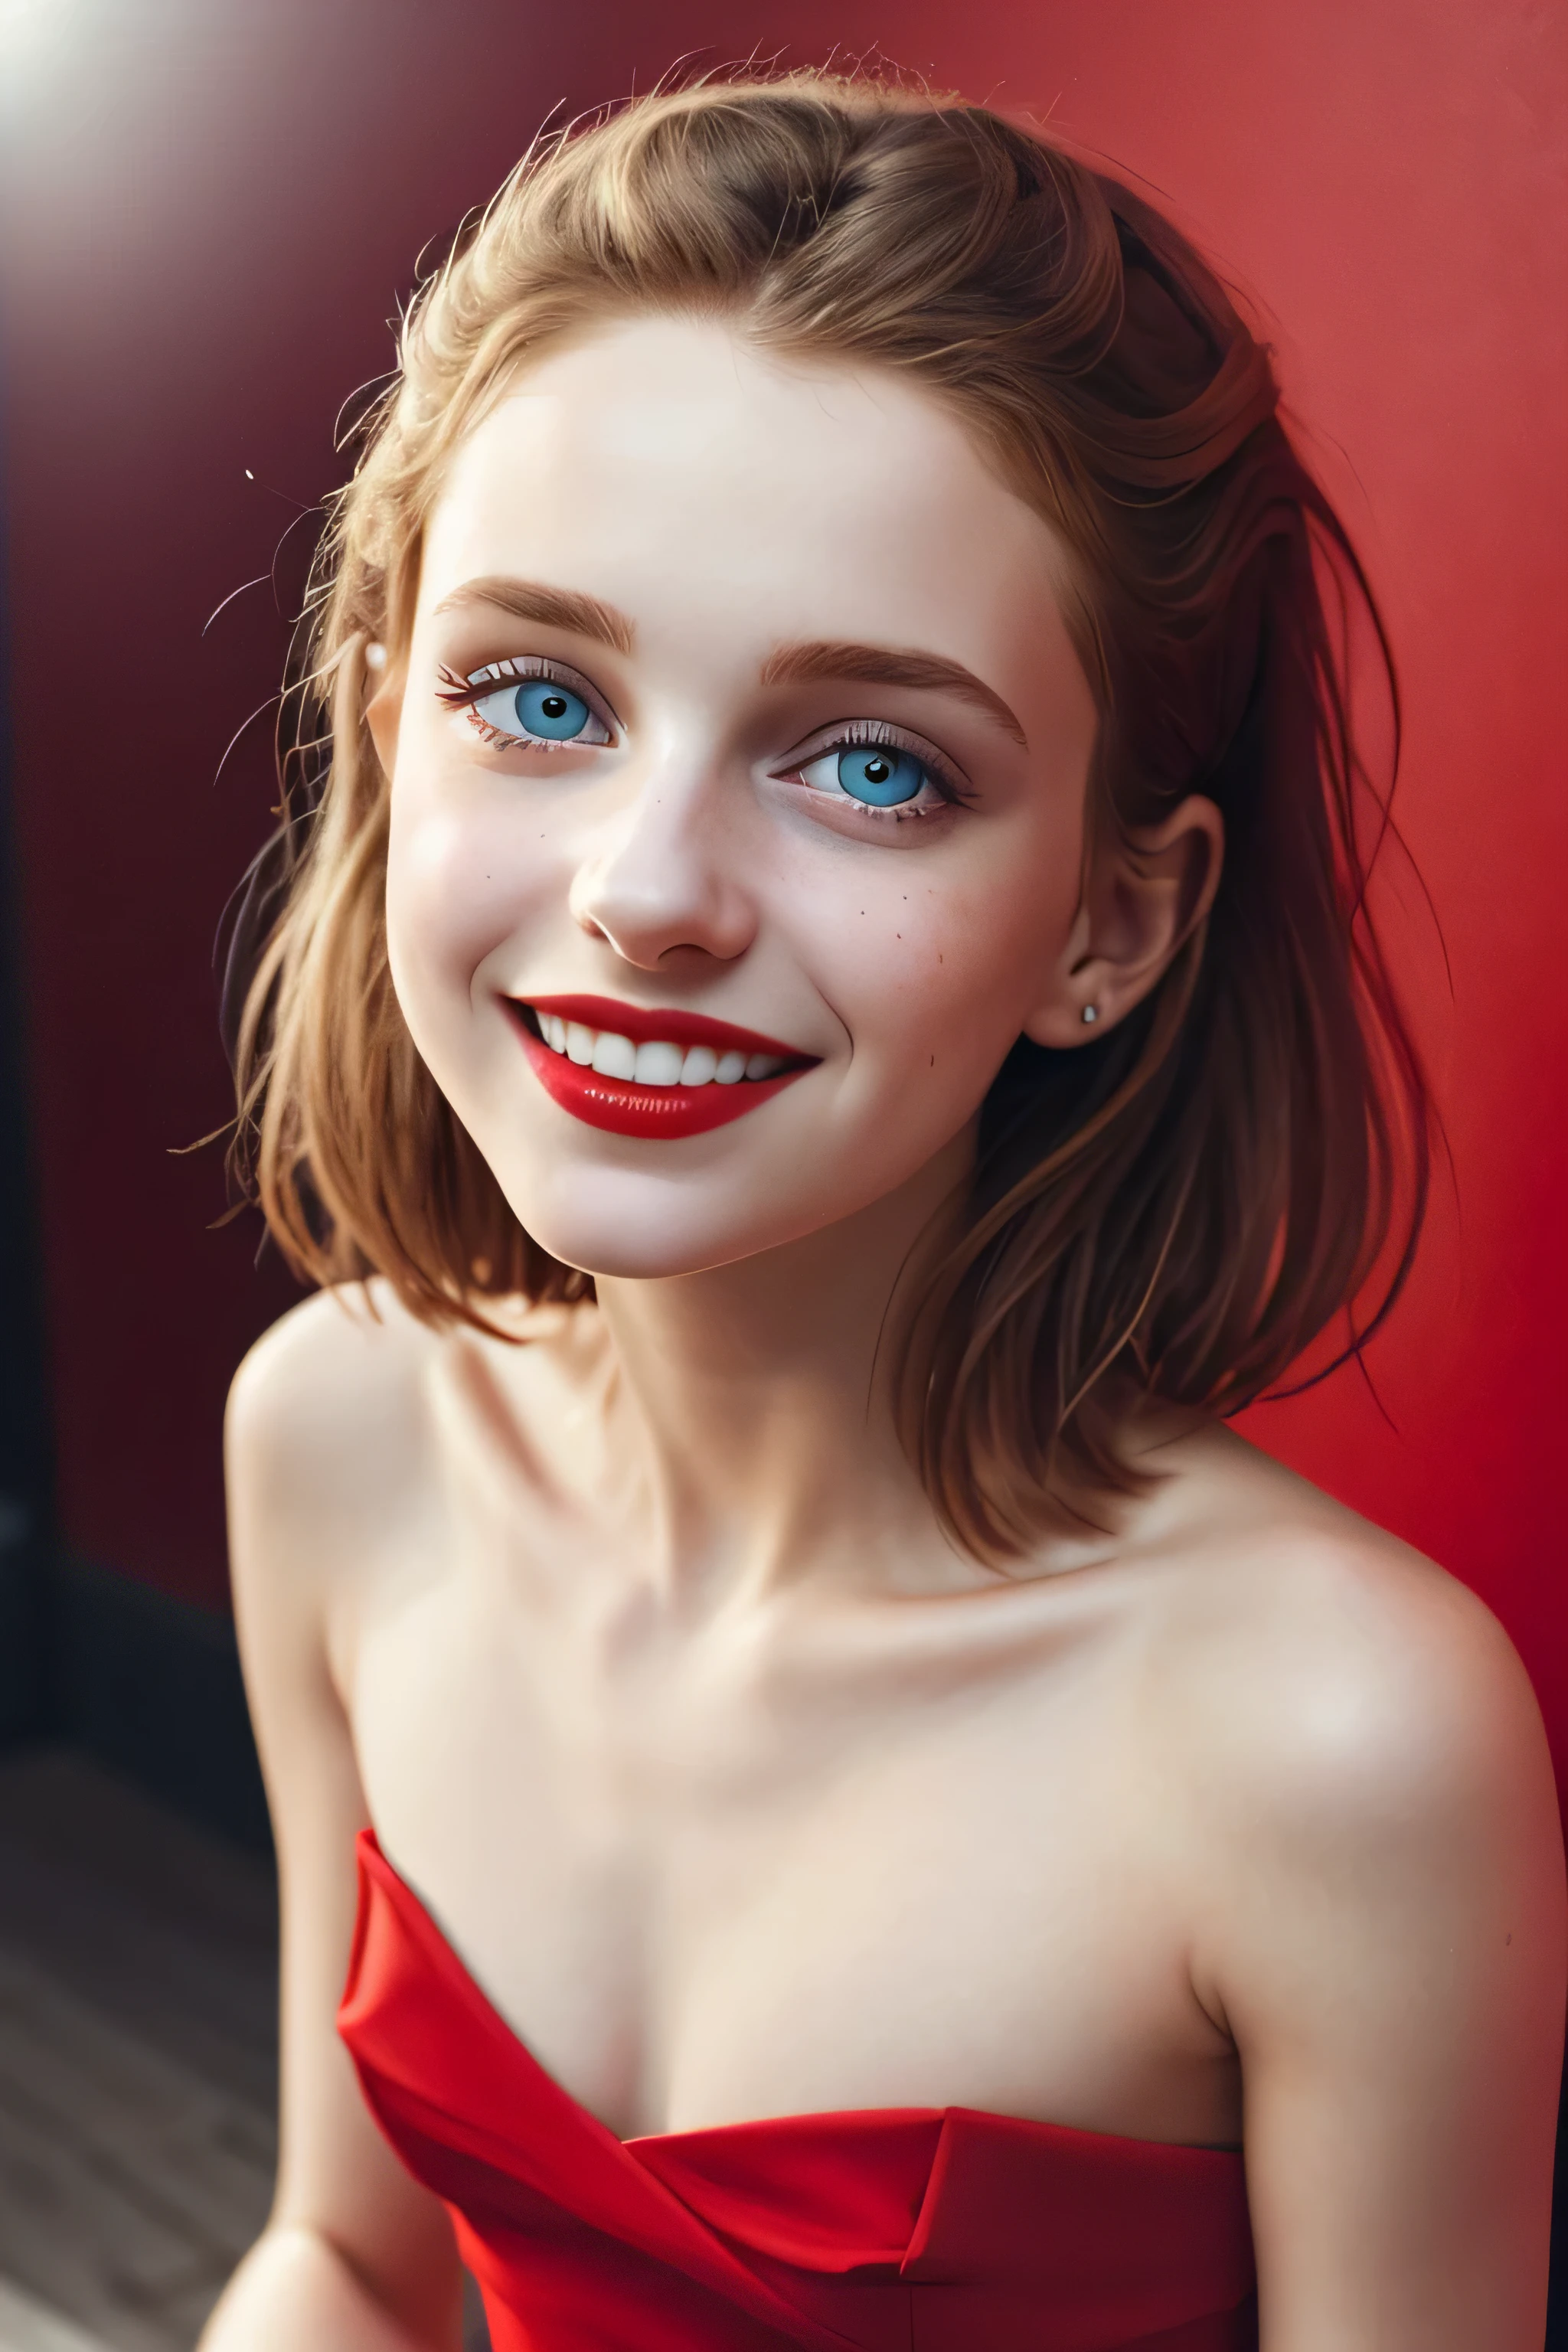 (obra de arte, alta qualidade, Olho de peixe:1.2)、Olhos fofos、Mulher bonita、sorriso: Os cantos da boca estão ligeiramente levantados.、(retrato em close:1.1), sozinho, sessão fotográfica de modelo, (vermelho theme:1.1), menina elegante, vermelho hair, Olhos prateados, vermelho lipstick, vermelho eye shadow, vermelho面, (sardas:0.7), (Europeu de 14 anos:1.3), sexy, Inocência pura, (軽いsorriso:0.8), atmosfera de prostituta, apaixonado, simple vermelho dress, decote, textura natural detalhada da pele, olhar cativante, Iluminação detalhada, (vermelho:1.1) fundo da parede, profundidade superficial de campo, atmosfera romântica, paleta pastel sonhadora, detalhes peculiares, captuvermelho on film, NSFW, (detalhes intrincados:0.5)